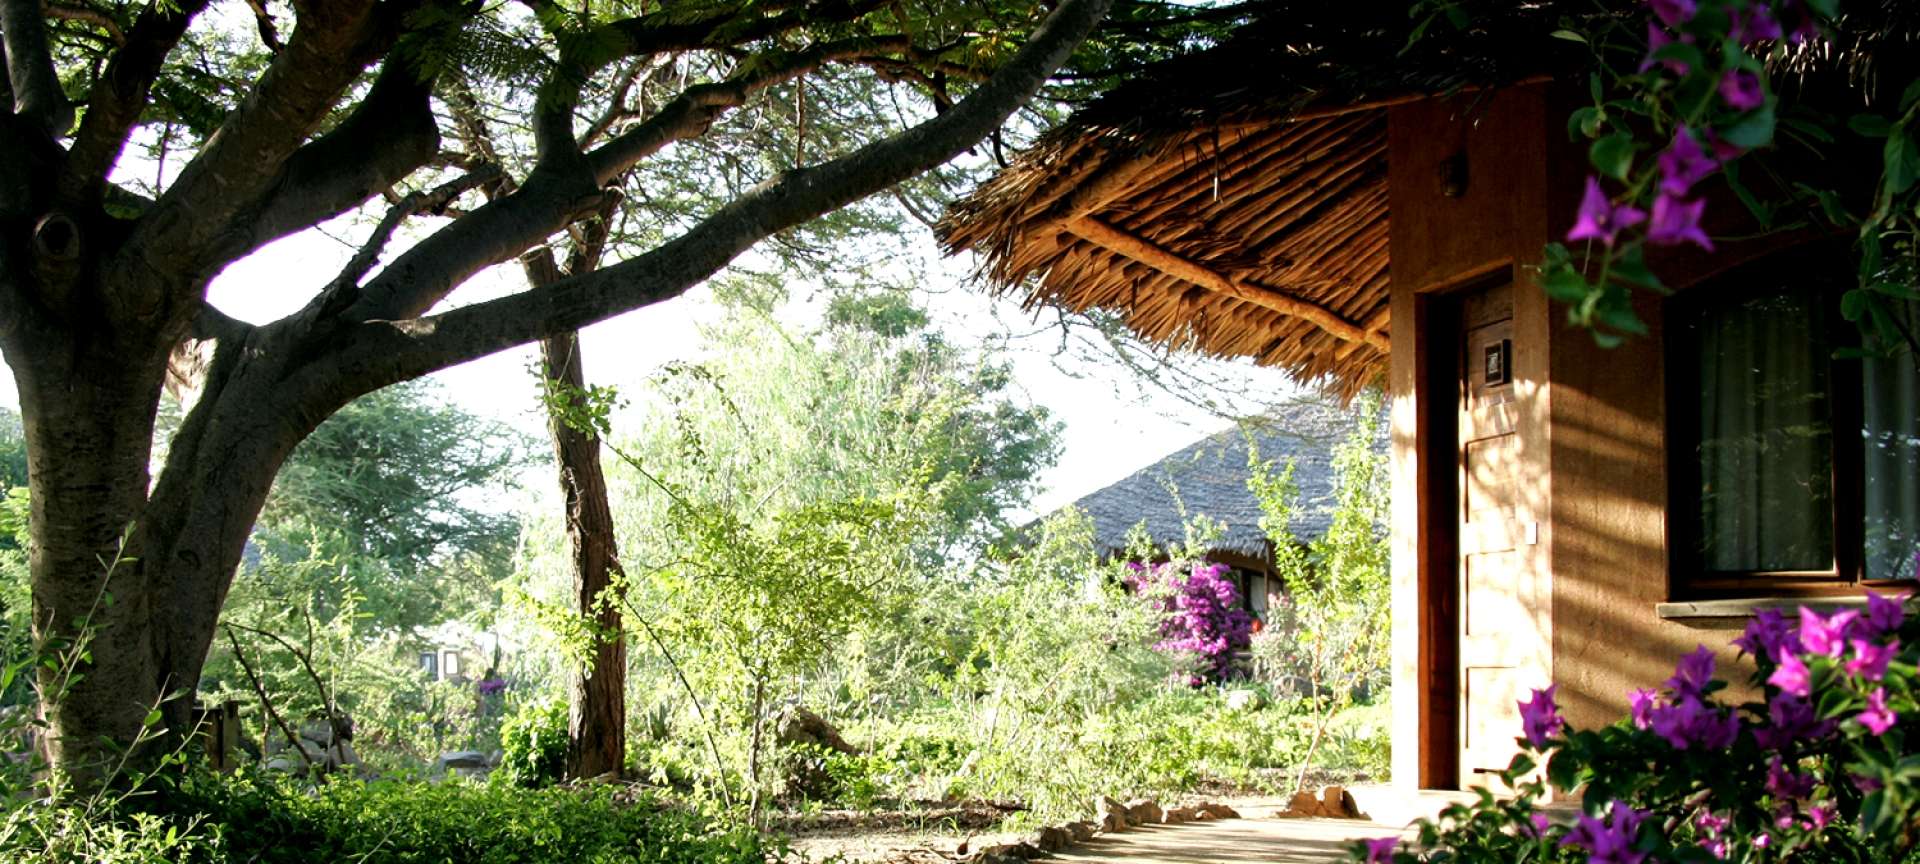 Kia Lodge in Tanzania